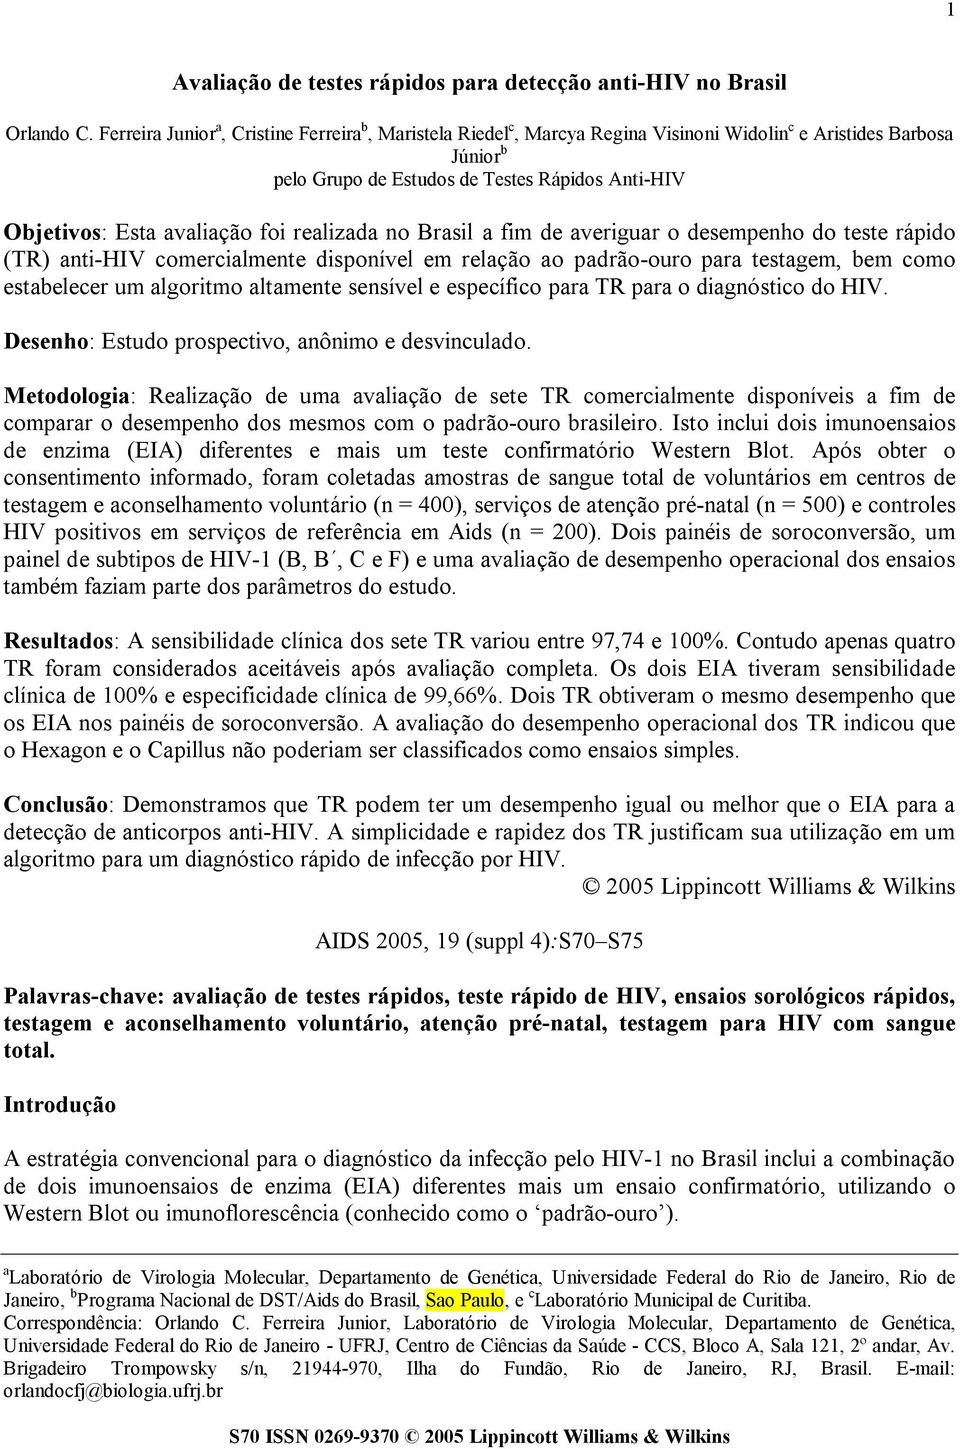 foi realizada no Brasil a fim de averiguar o desempenho do teste rápido (TR) anti-hiv comercialmente disponível em relação ao padrão-ouro para testagem, bem como estabelecer um algoritmo altamente